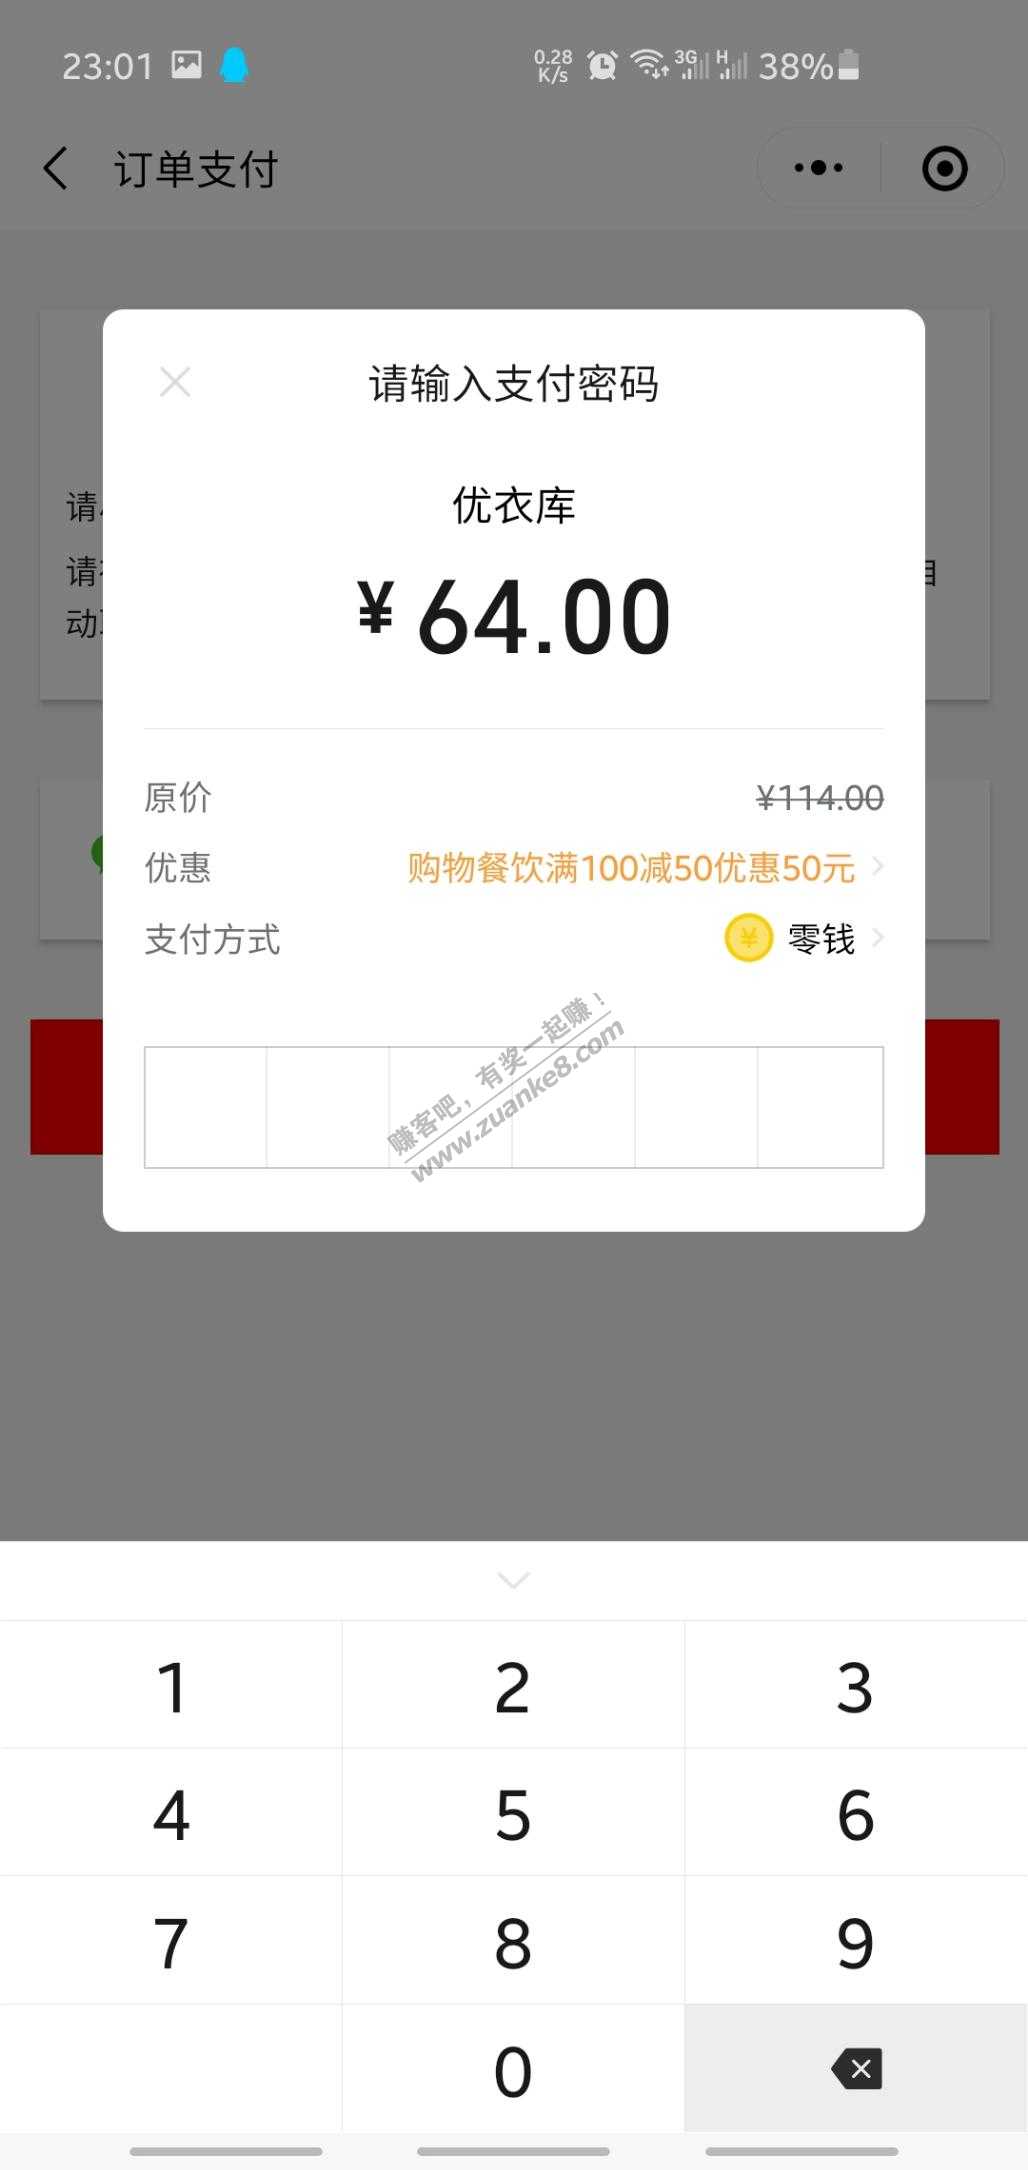 多彩宝消费券用法之一-惠小助(52huixz.com)